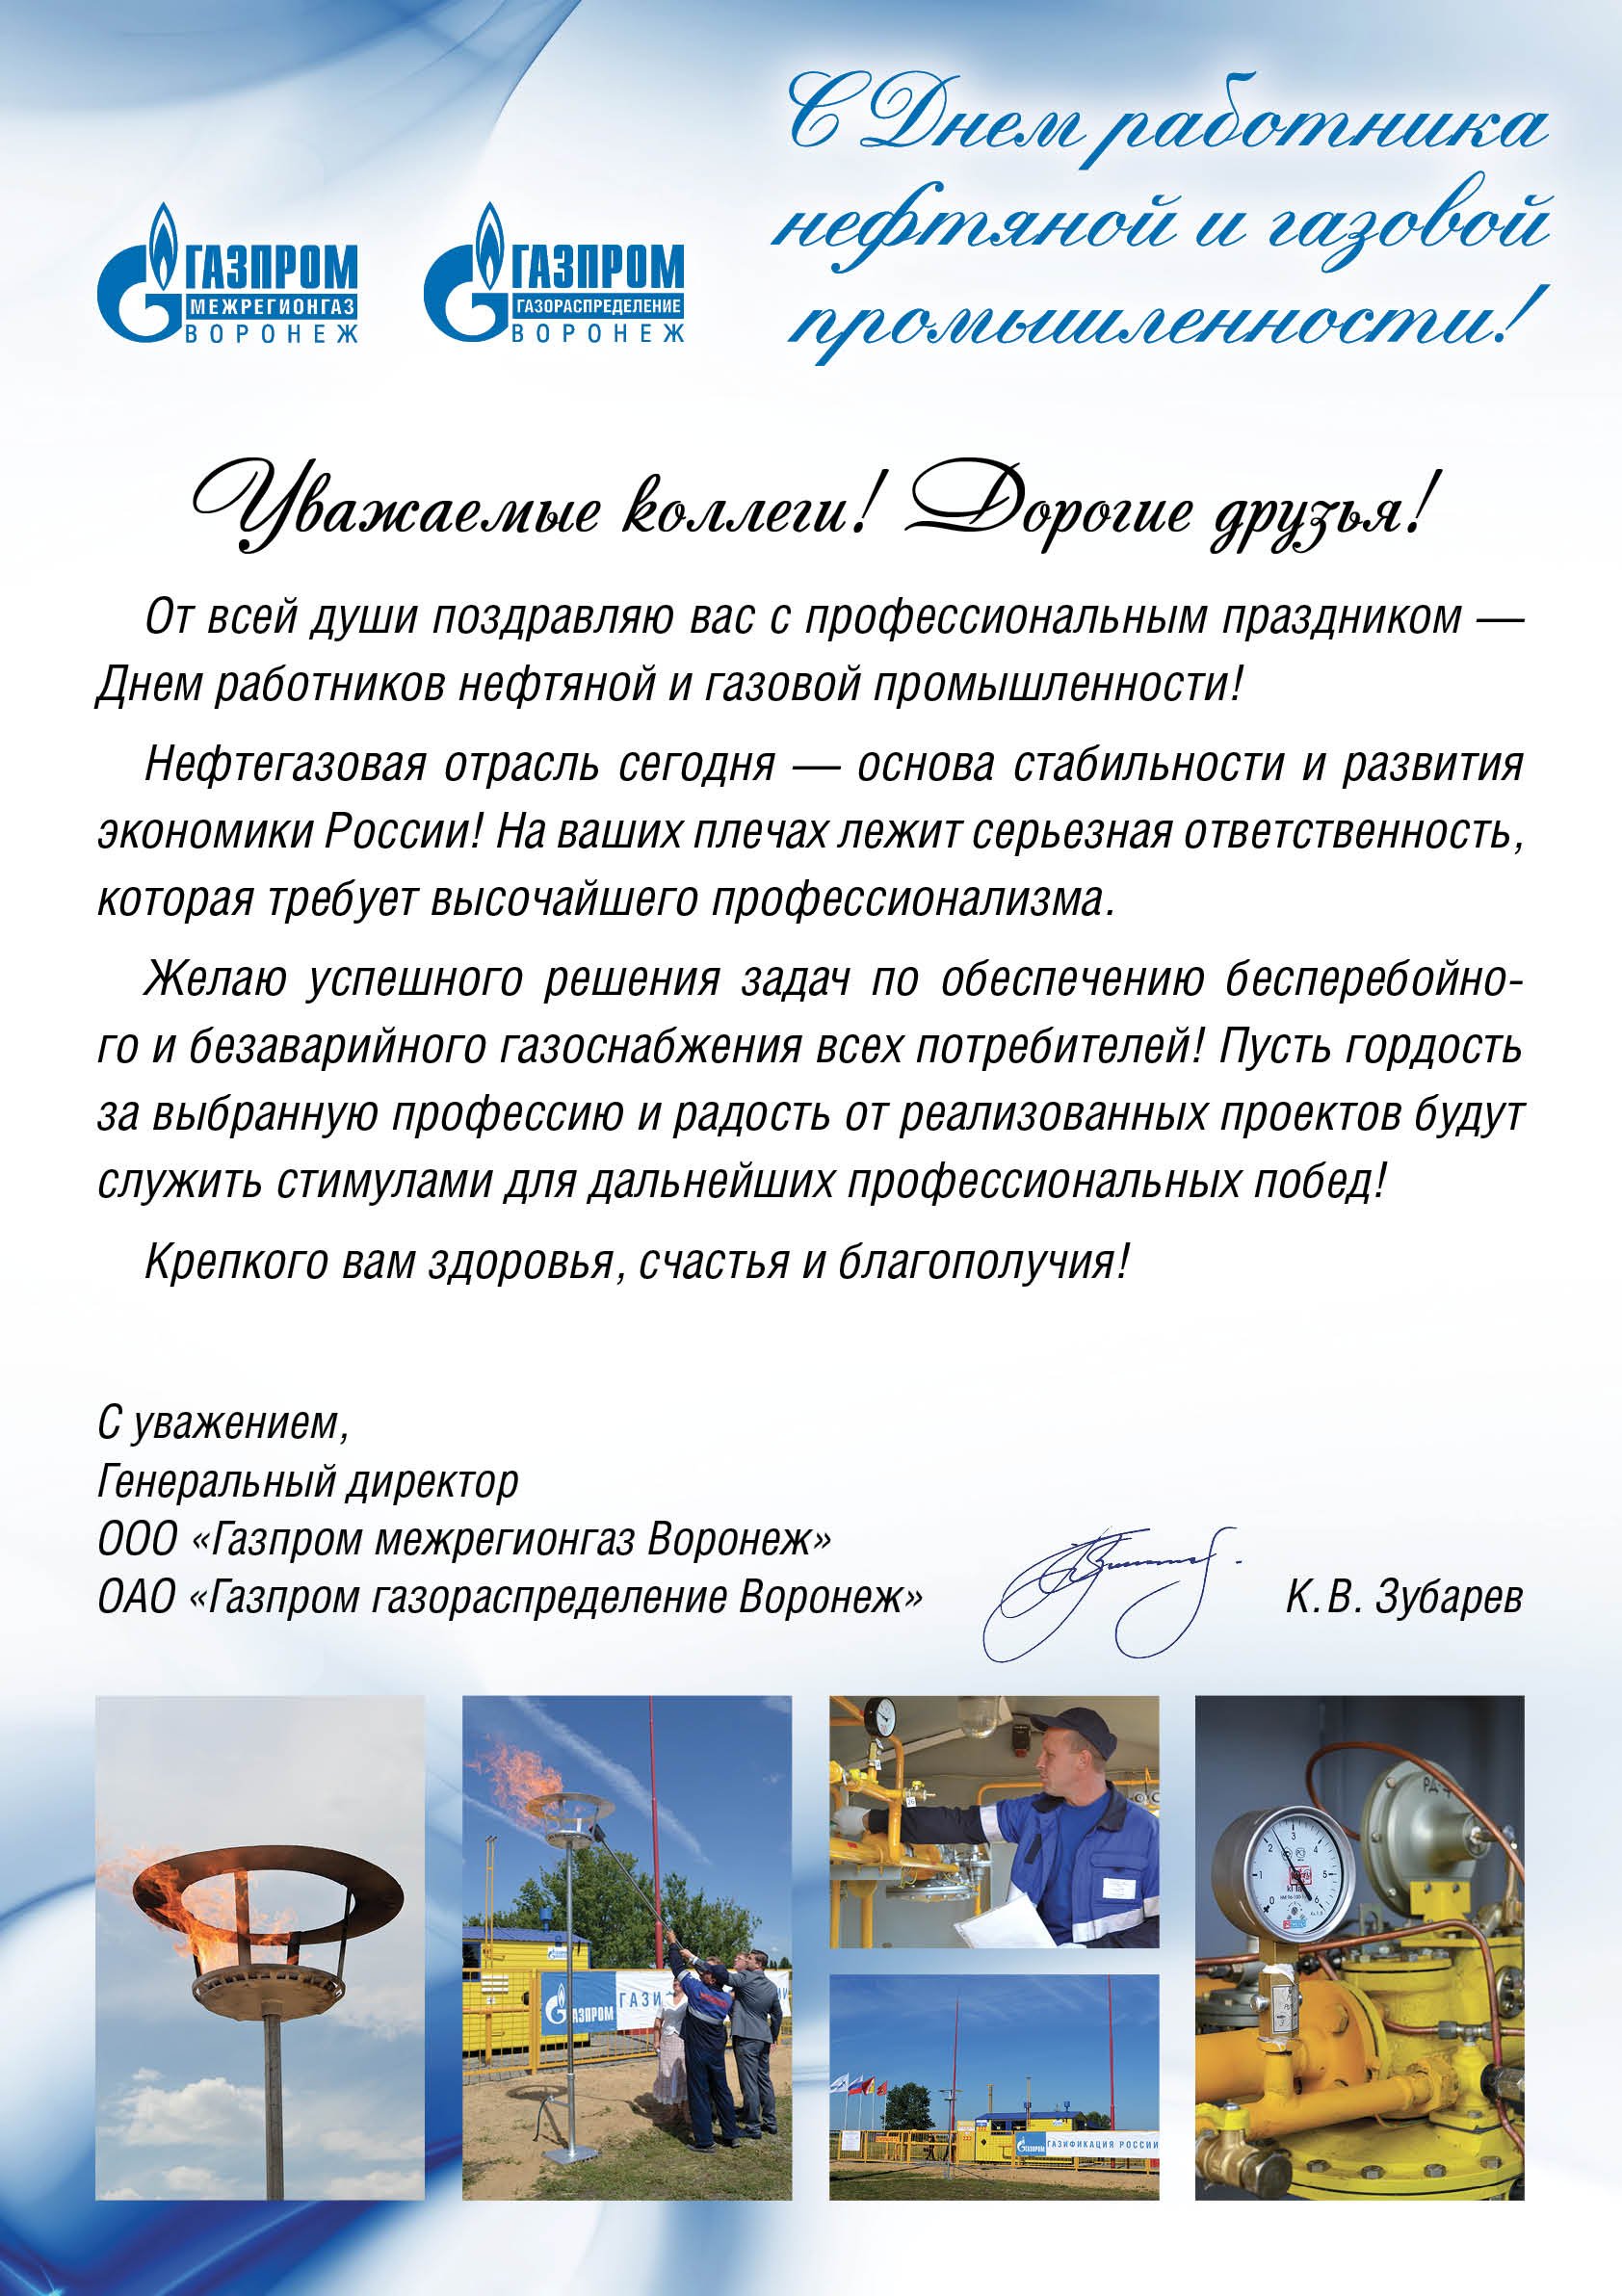 Поздравление сотрудников Газпрома с днем рождения компании